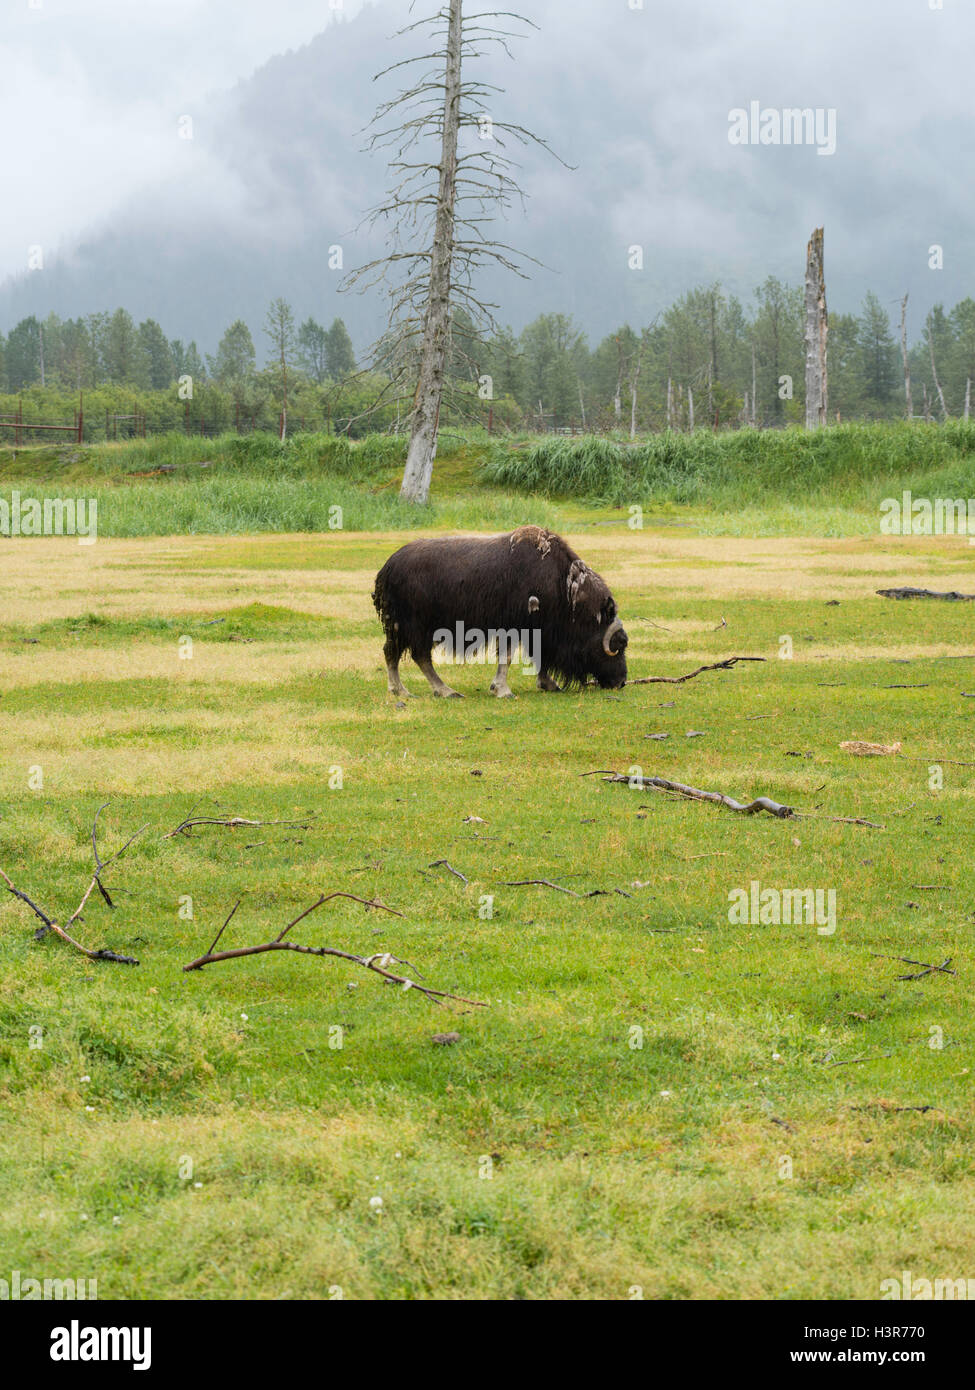 A musk ox grazes on grass at the Alaska Wildlife Conservation Center near Girdwood, Alaska. Stock Photo